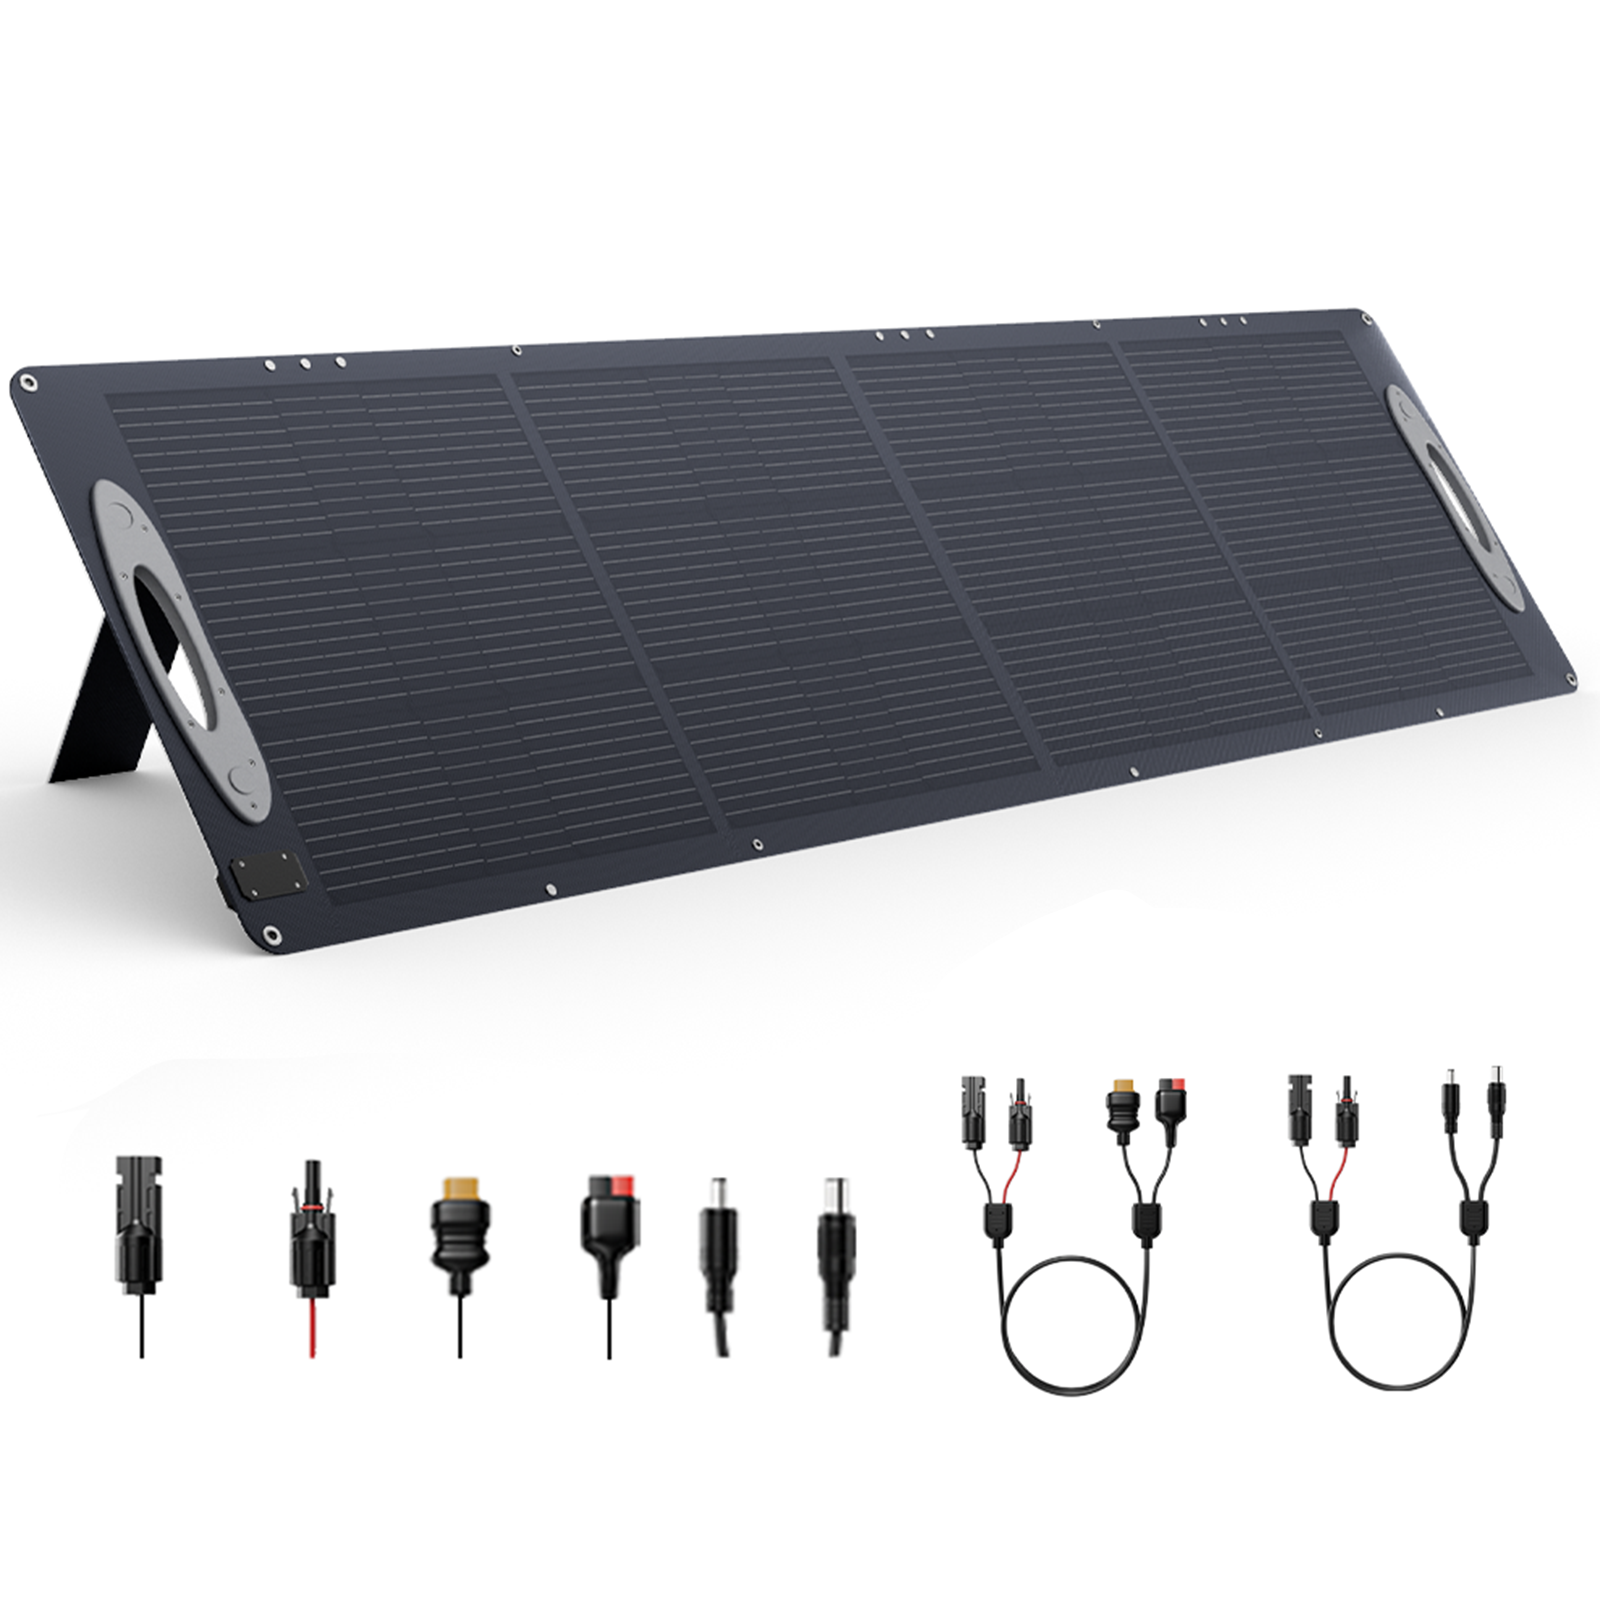 [AB Direkt] VDL SC0201 200W ETFE Güneş Paneli 5V USB 20V DC Güneş Panelleri 23.5% Verimli Taşınabilir Katlanabilir Güneş Paneli Patio, RV, Açık Hava Kamp Güç Kesintisi Acil Durum